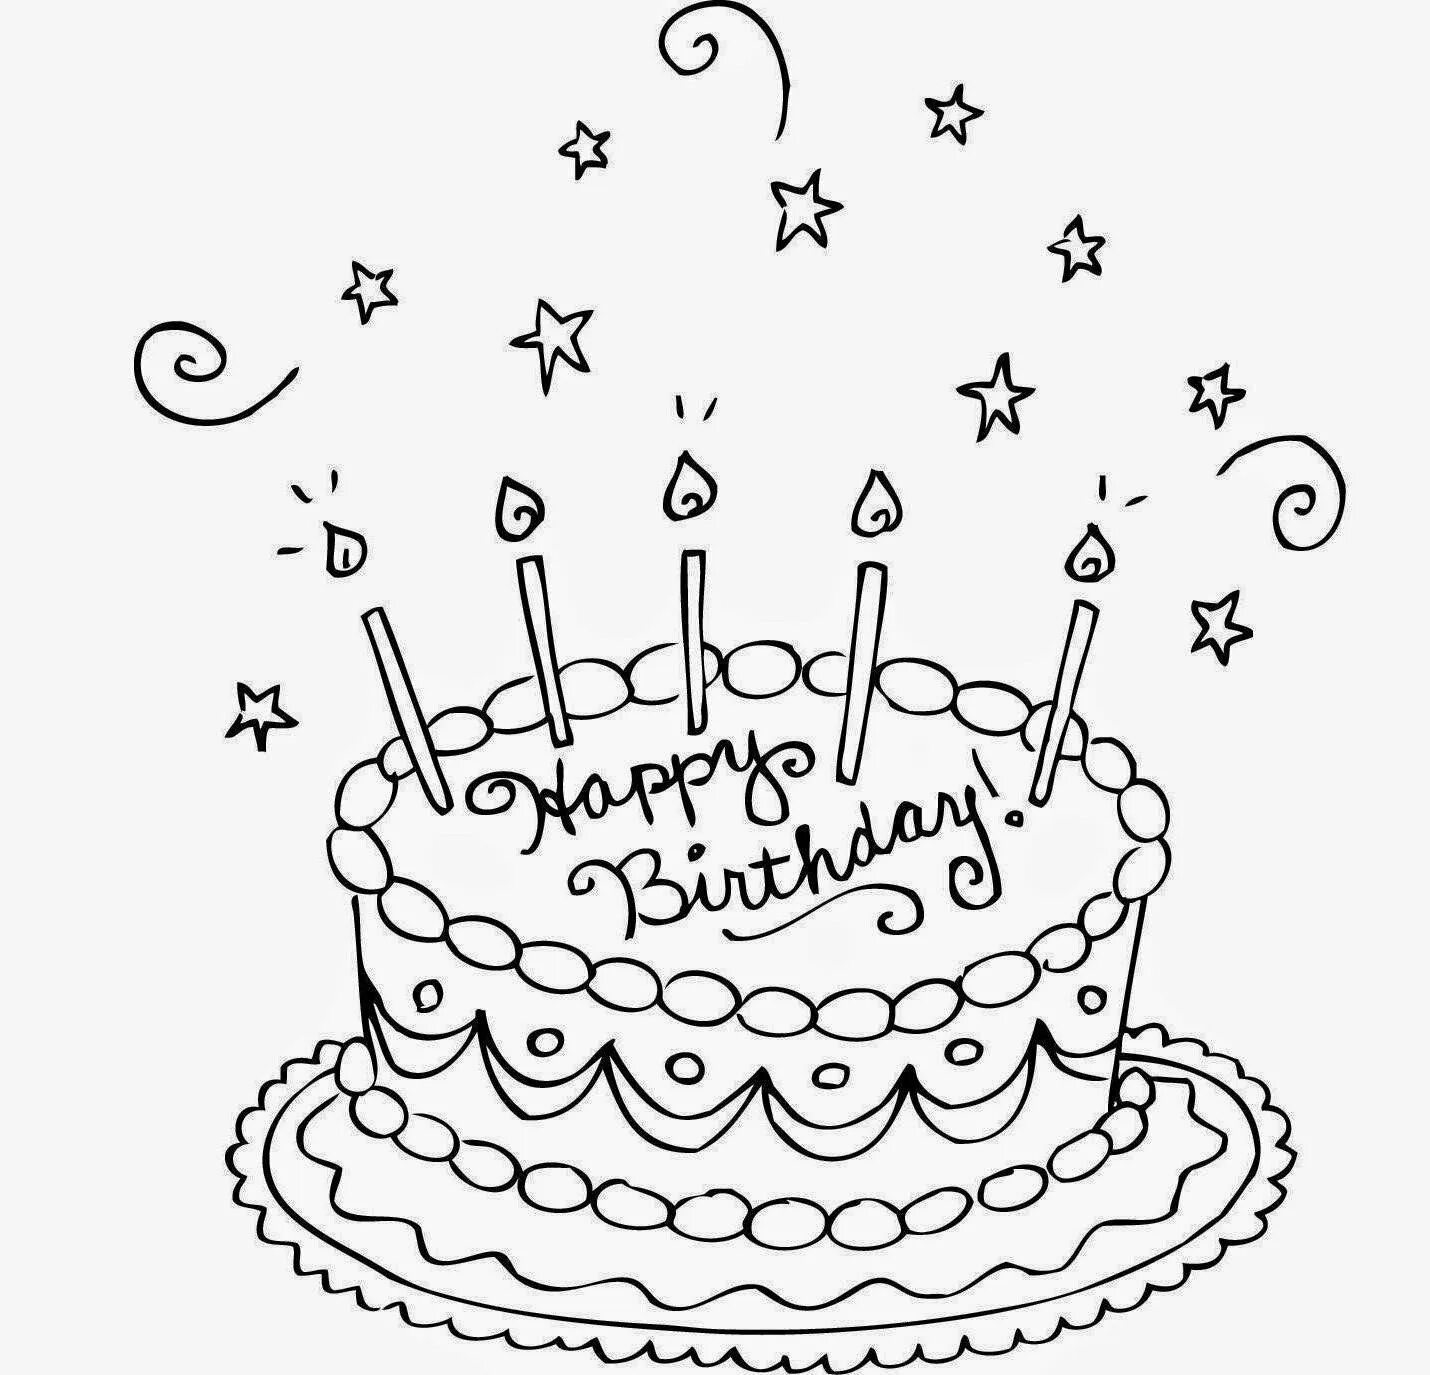 Распечатать день рождения красиво. Рисунок на день рождения. Раскраска торт. Раскараскатортнаденьрождения. Раскраска "с днем рождения!".